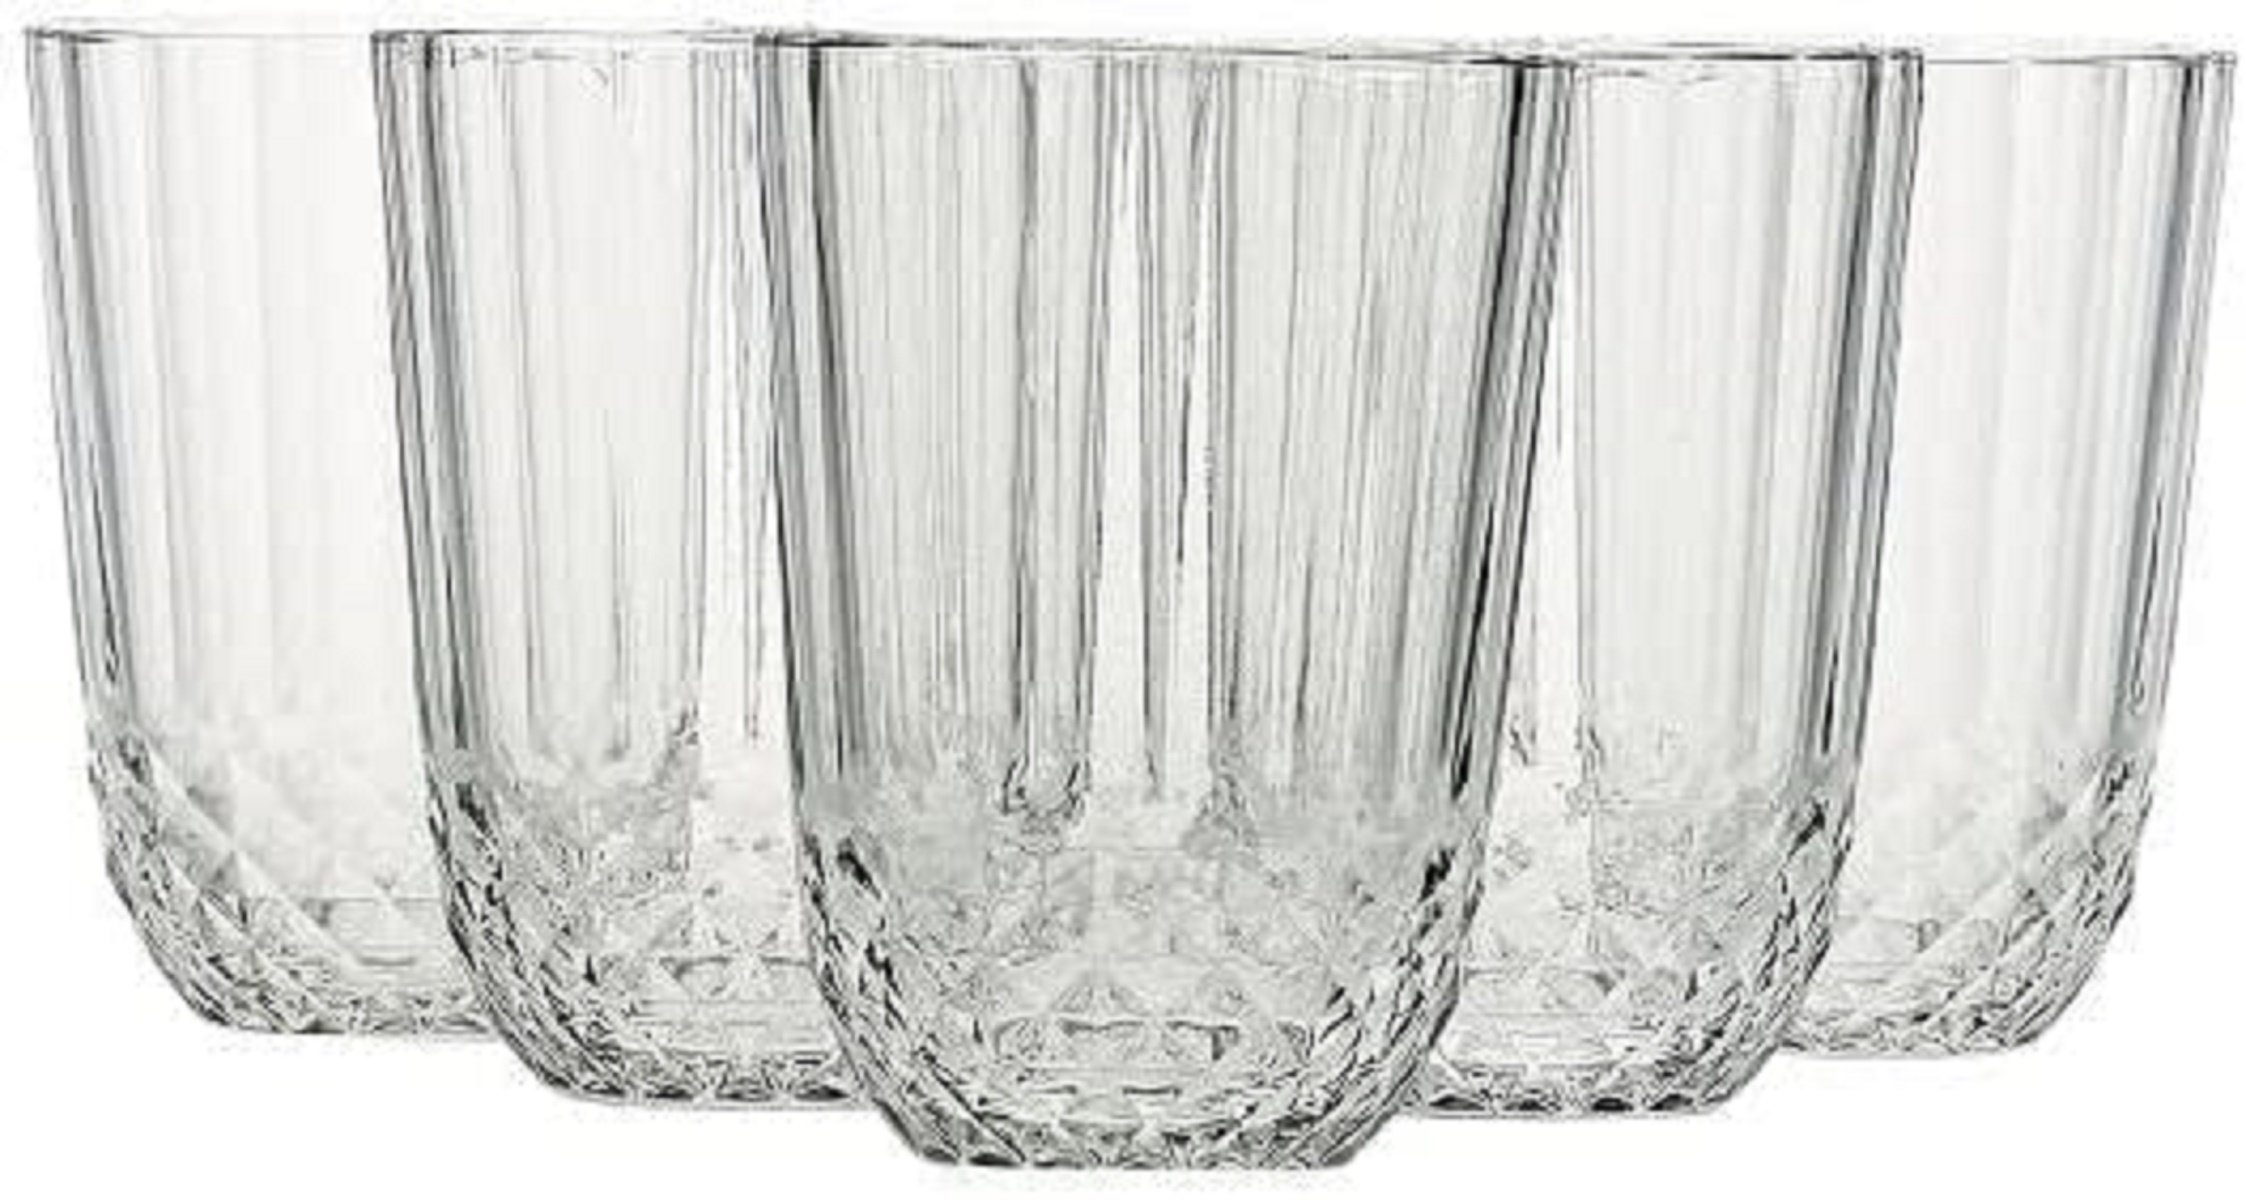 255ml Glas 52750 Wasser-Schnapsglas 6er-Set Wasserbecher Pasabahce Diony Trinkgläser